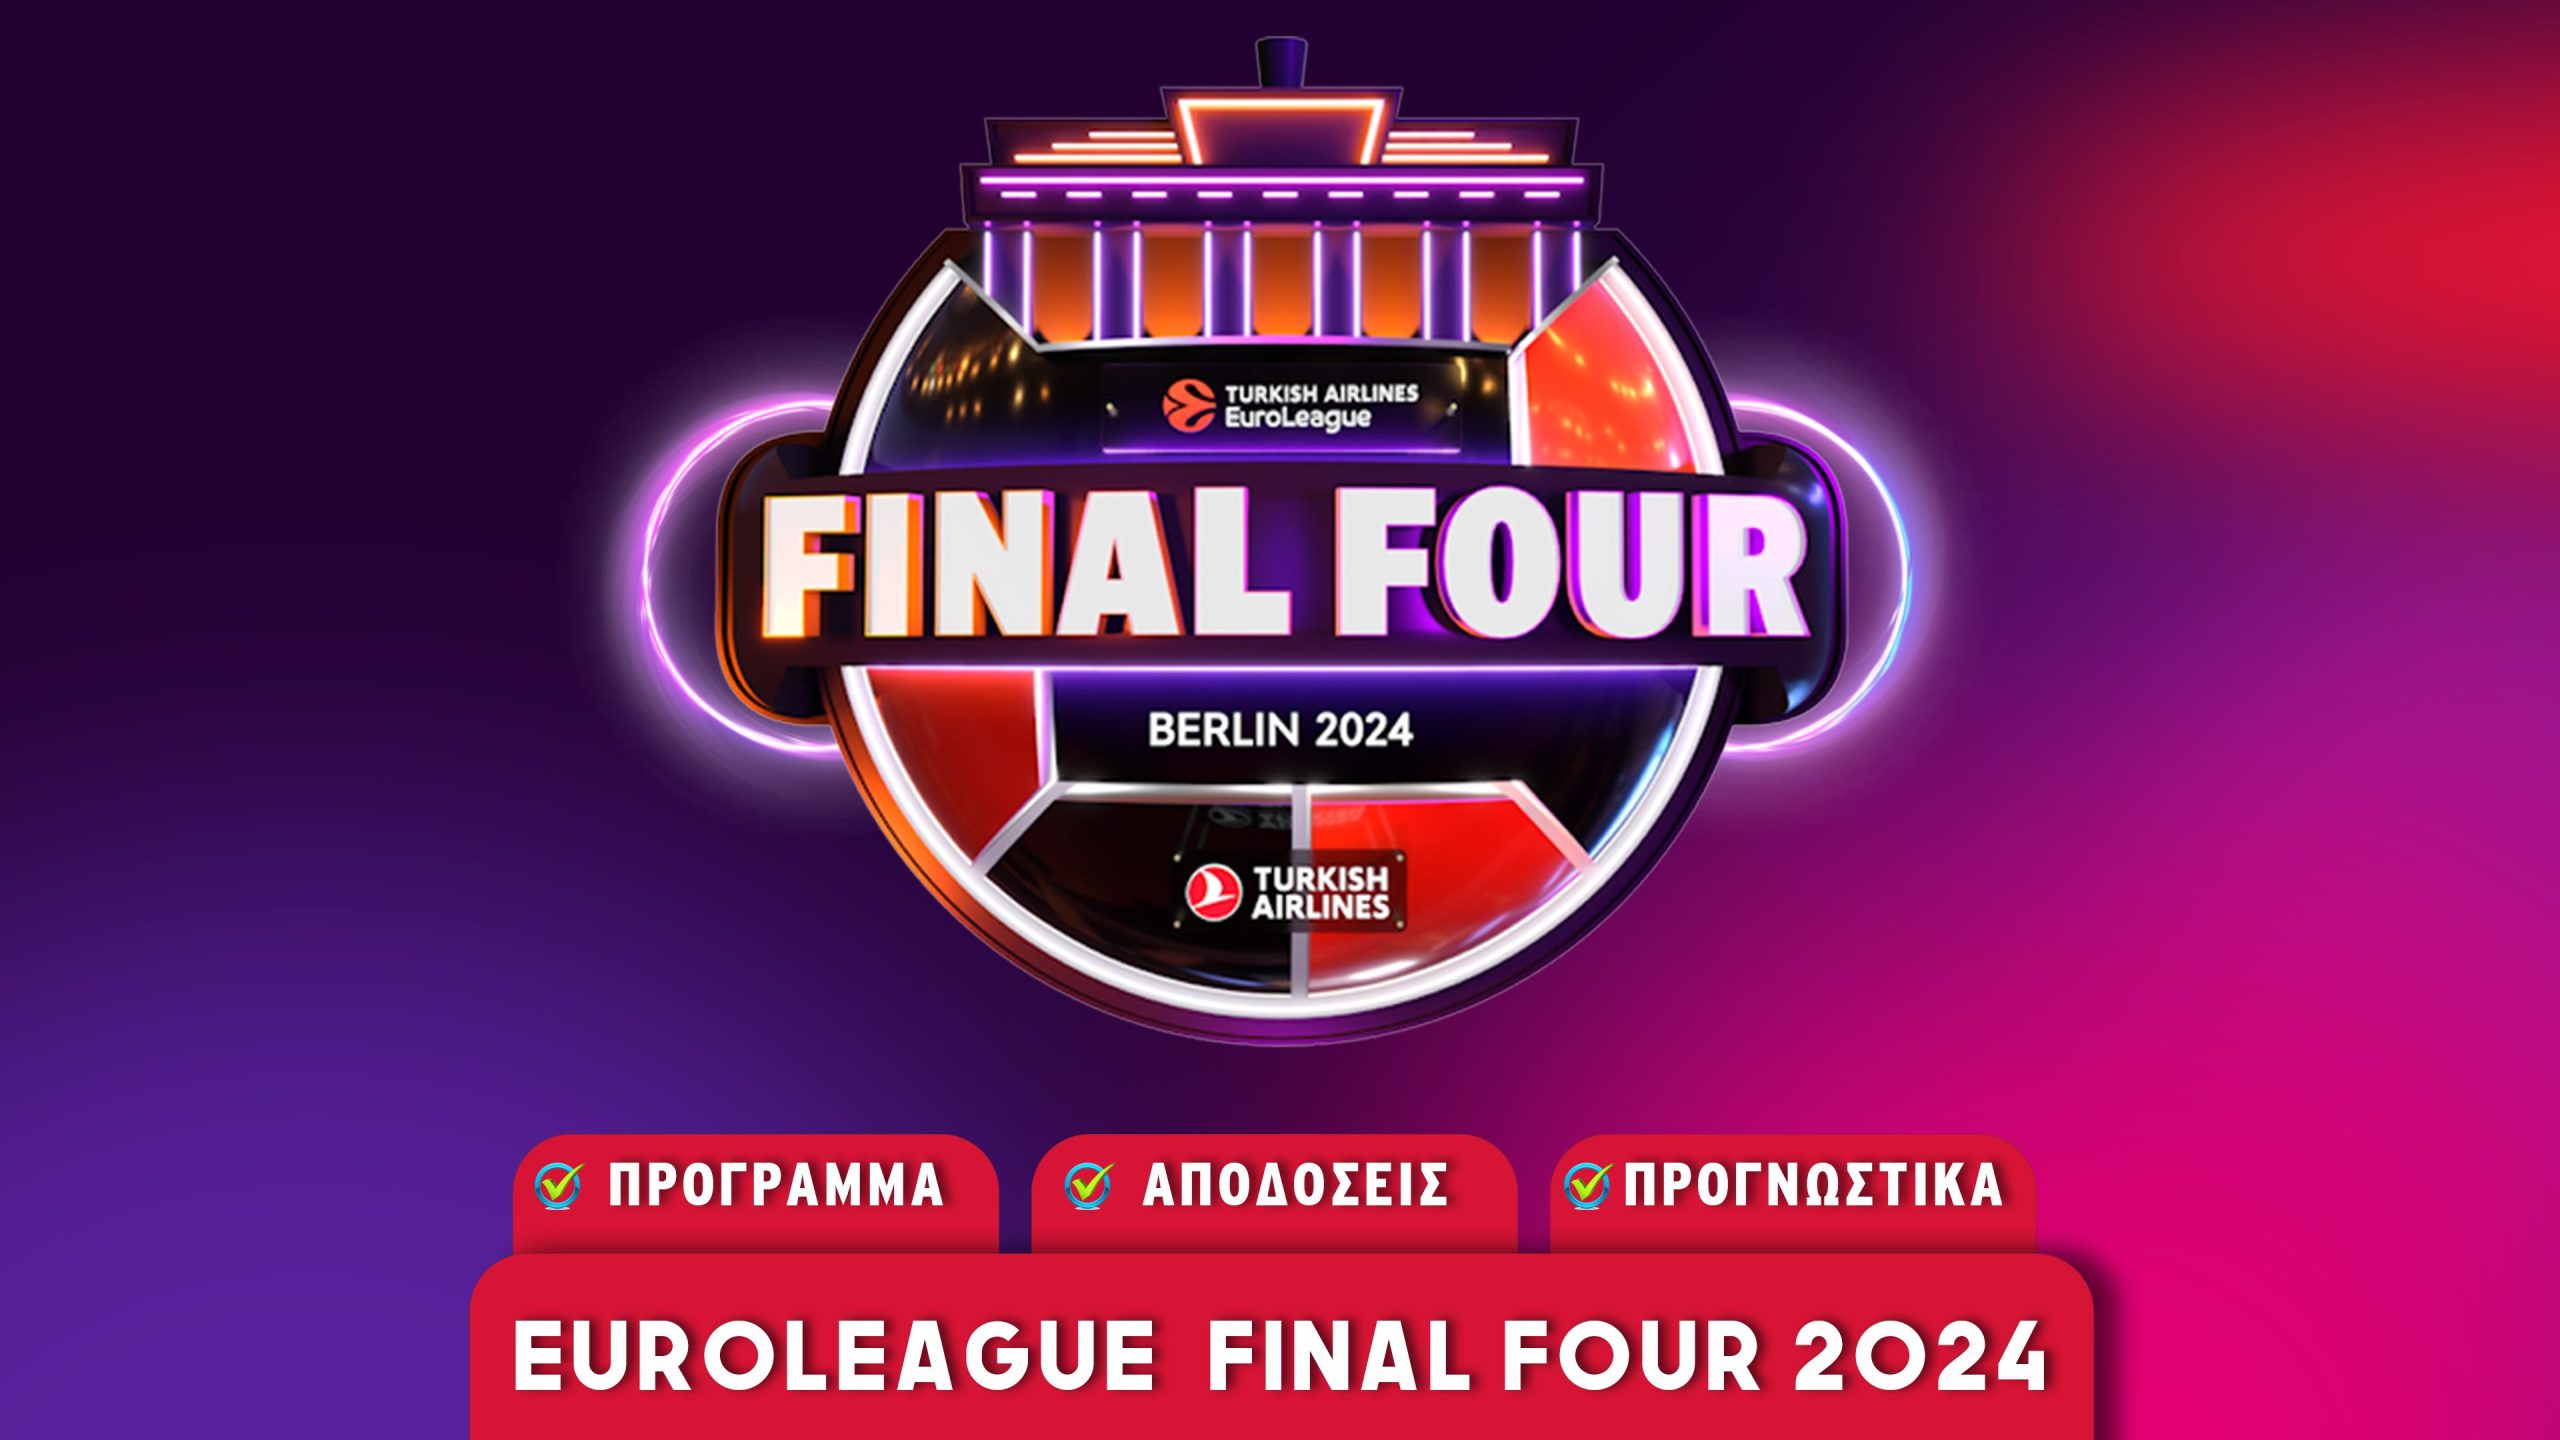 Euroleague Final Four 2024: Πρόγραμμα - Αποδόσεις - Προγνωστικά